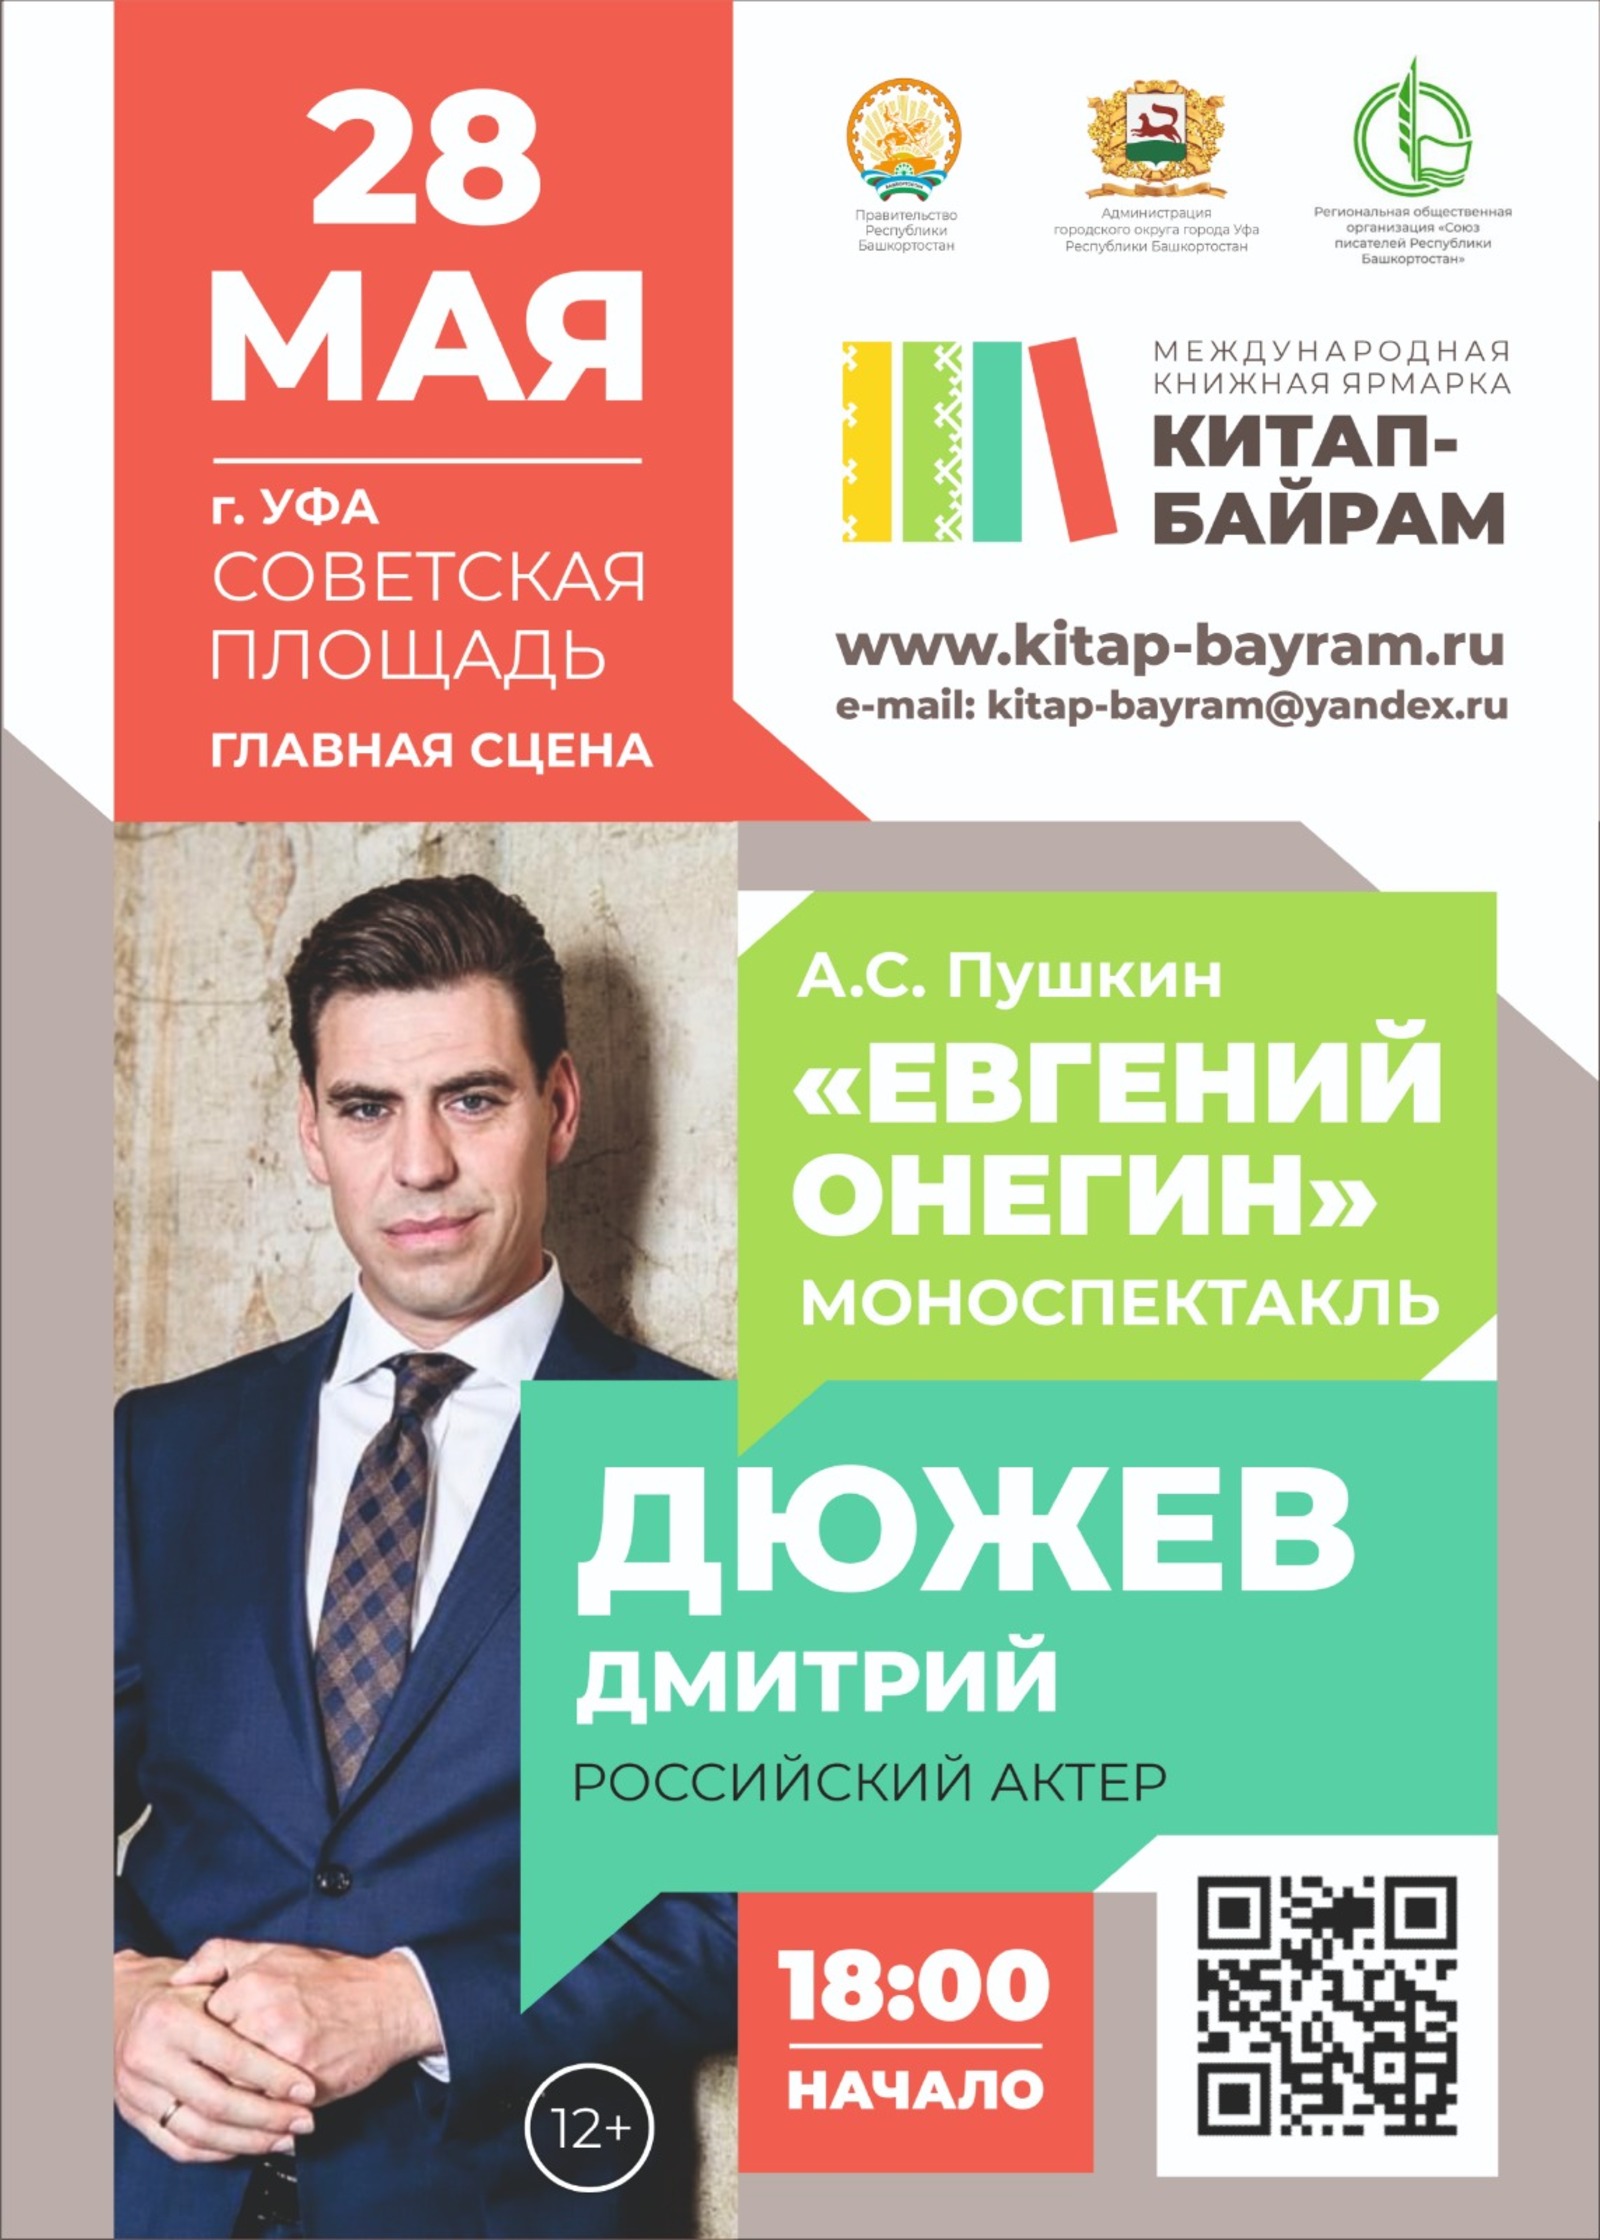 С 26 по 28 мая в Уфе впервые состоится Международная книжная ярмарка «Китап-байрам»